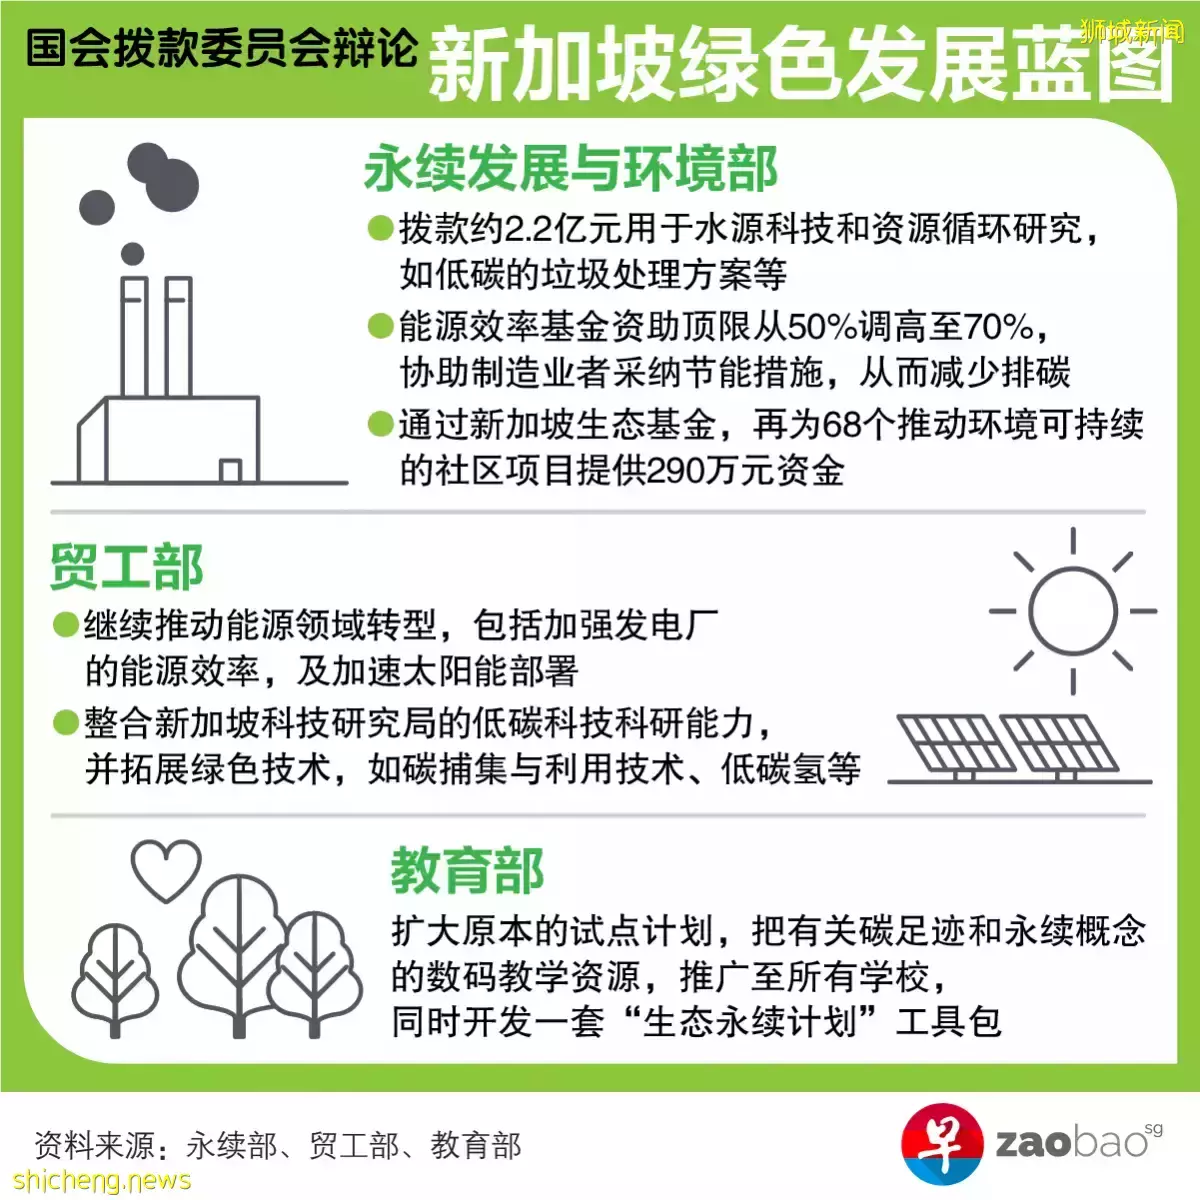 【国会】推动能源领域转型 发电厂须达温室气体排放标准 